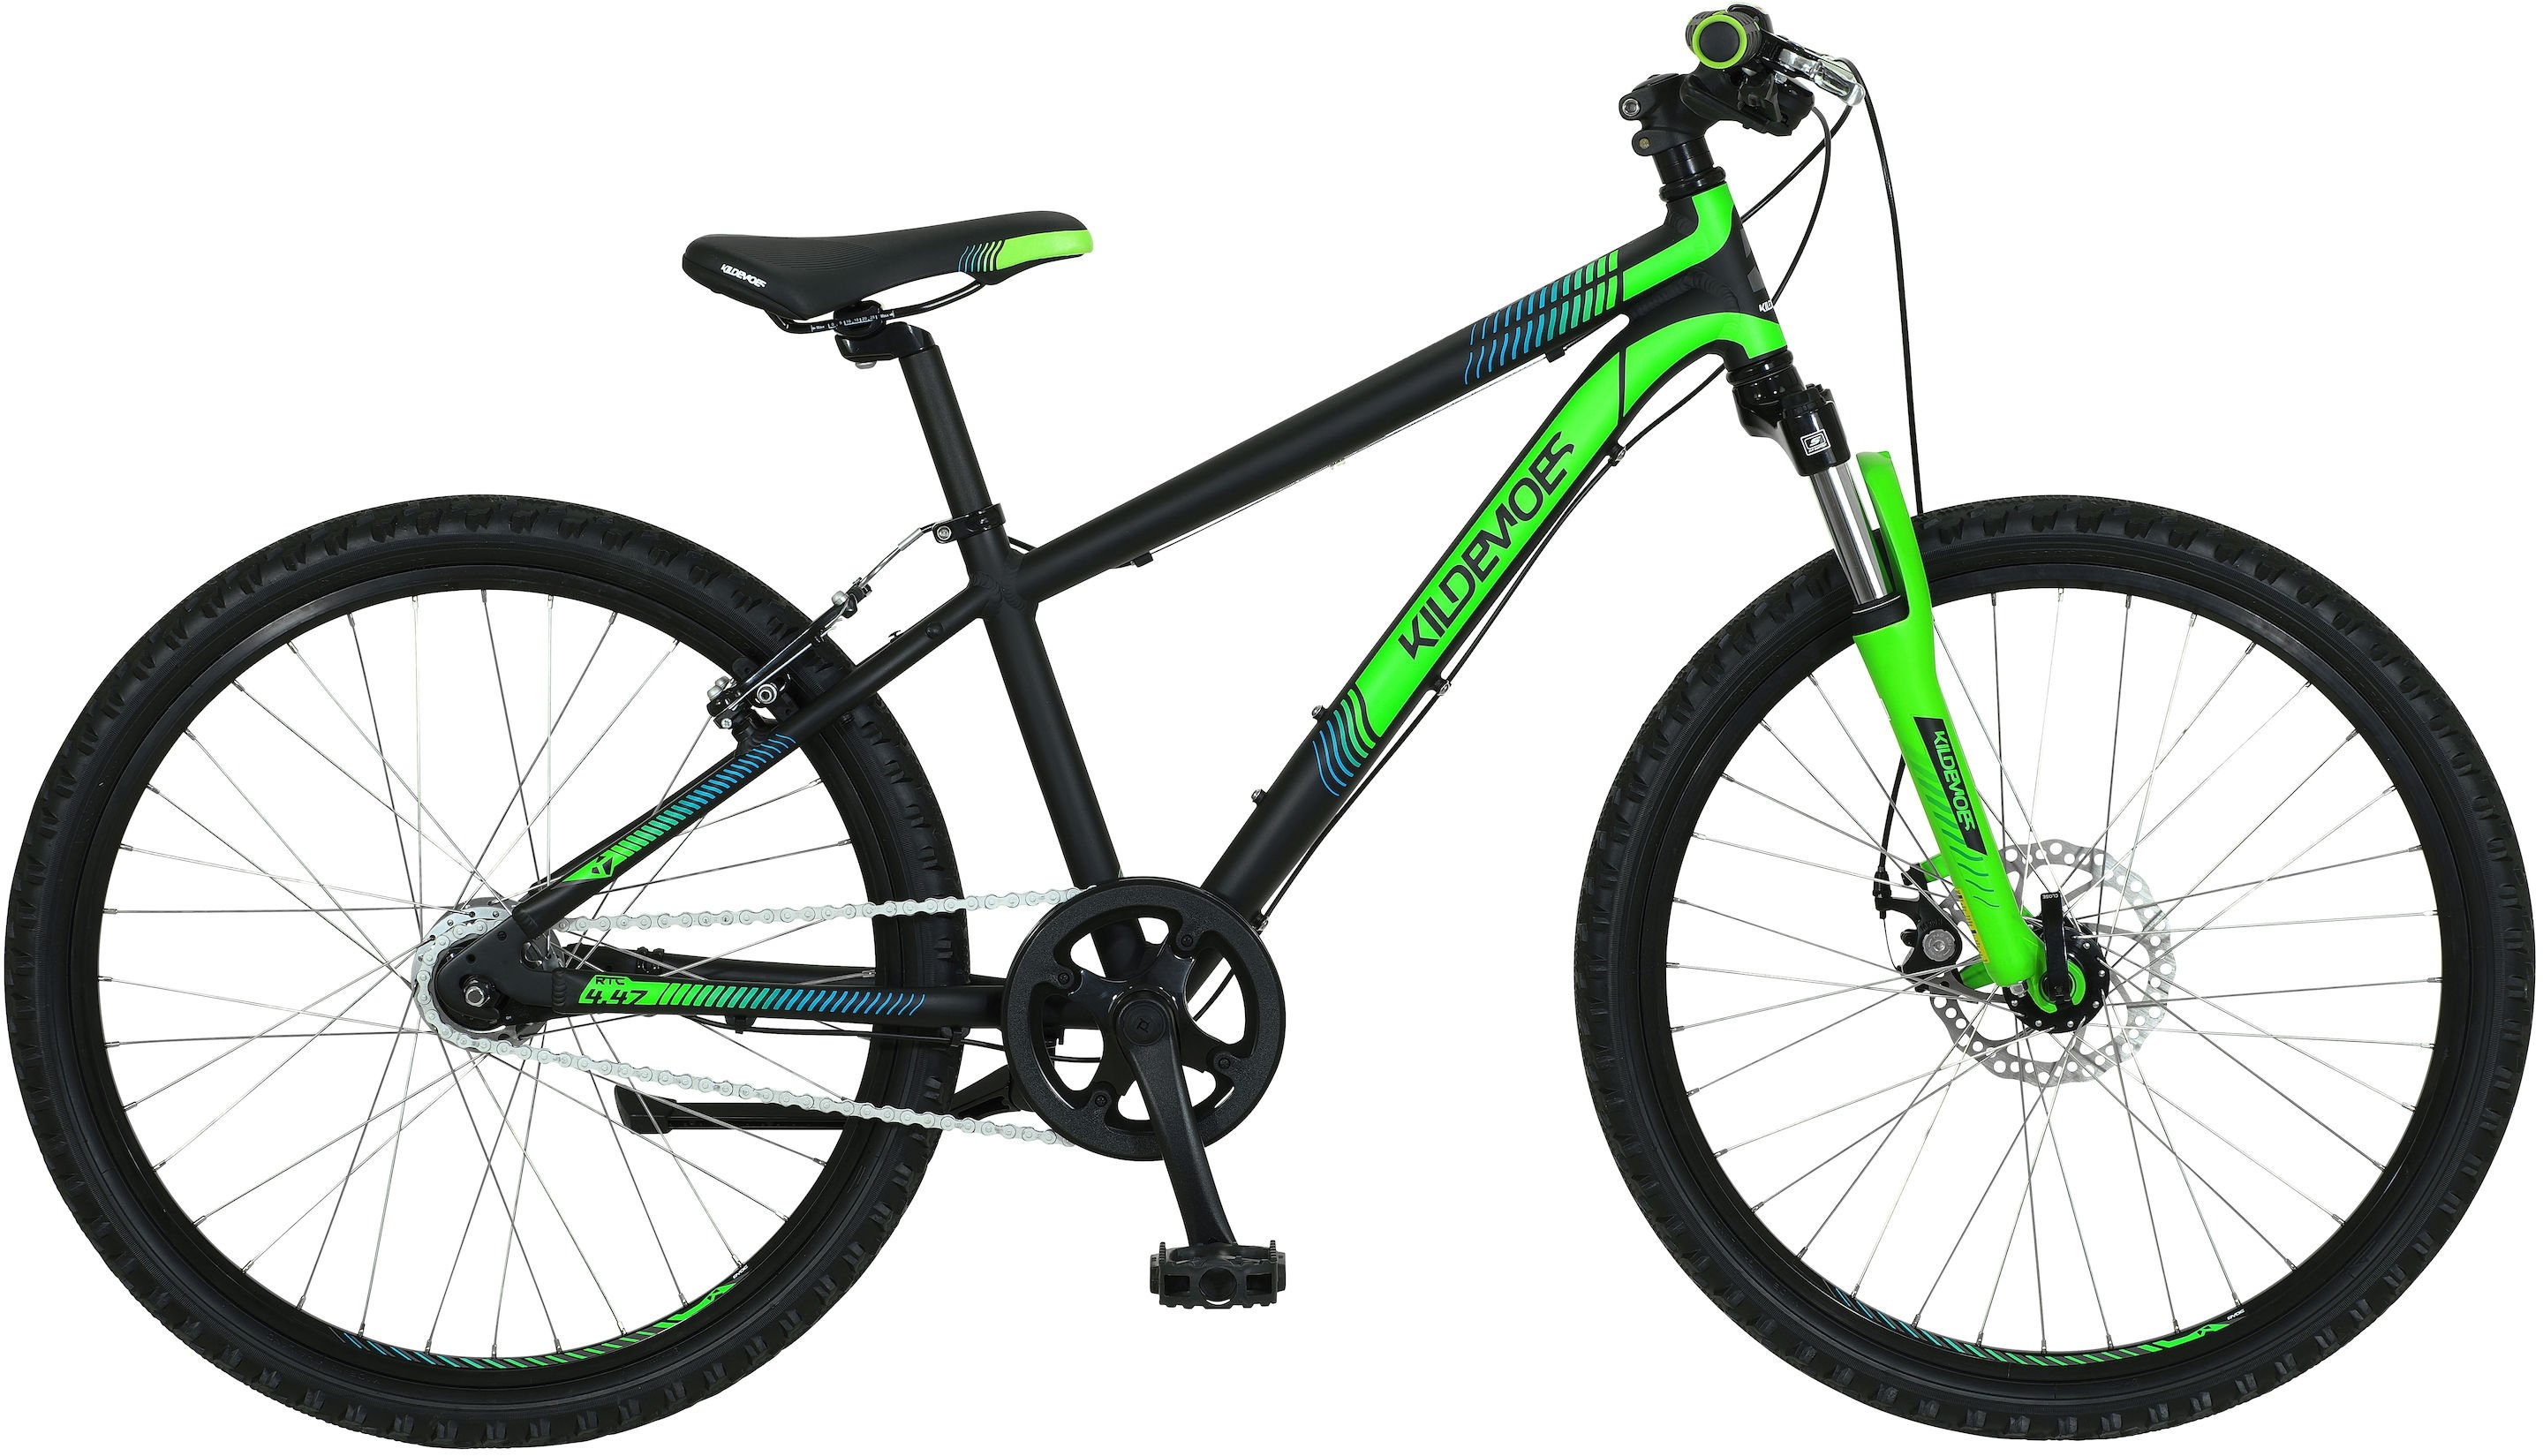 Cykler - Børnecykler - Kildemoes Intruder 7g Dreng 24" 2020 - Sort/grøn